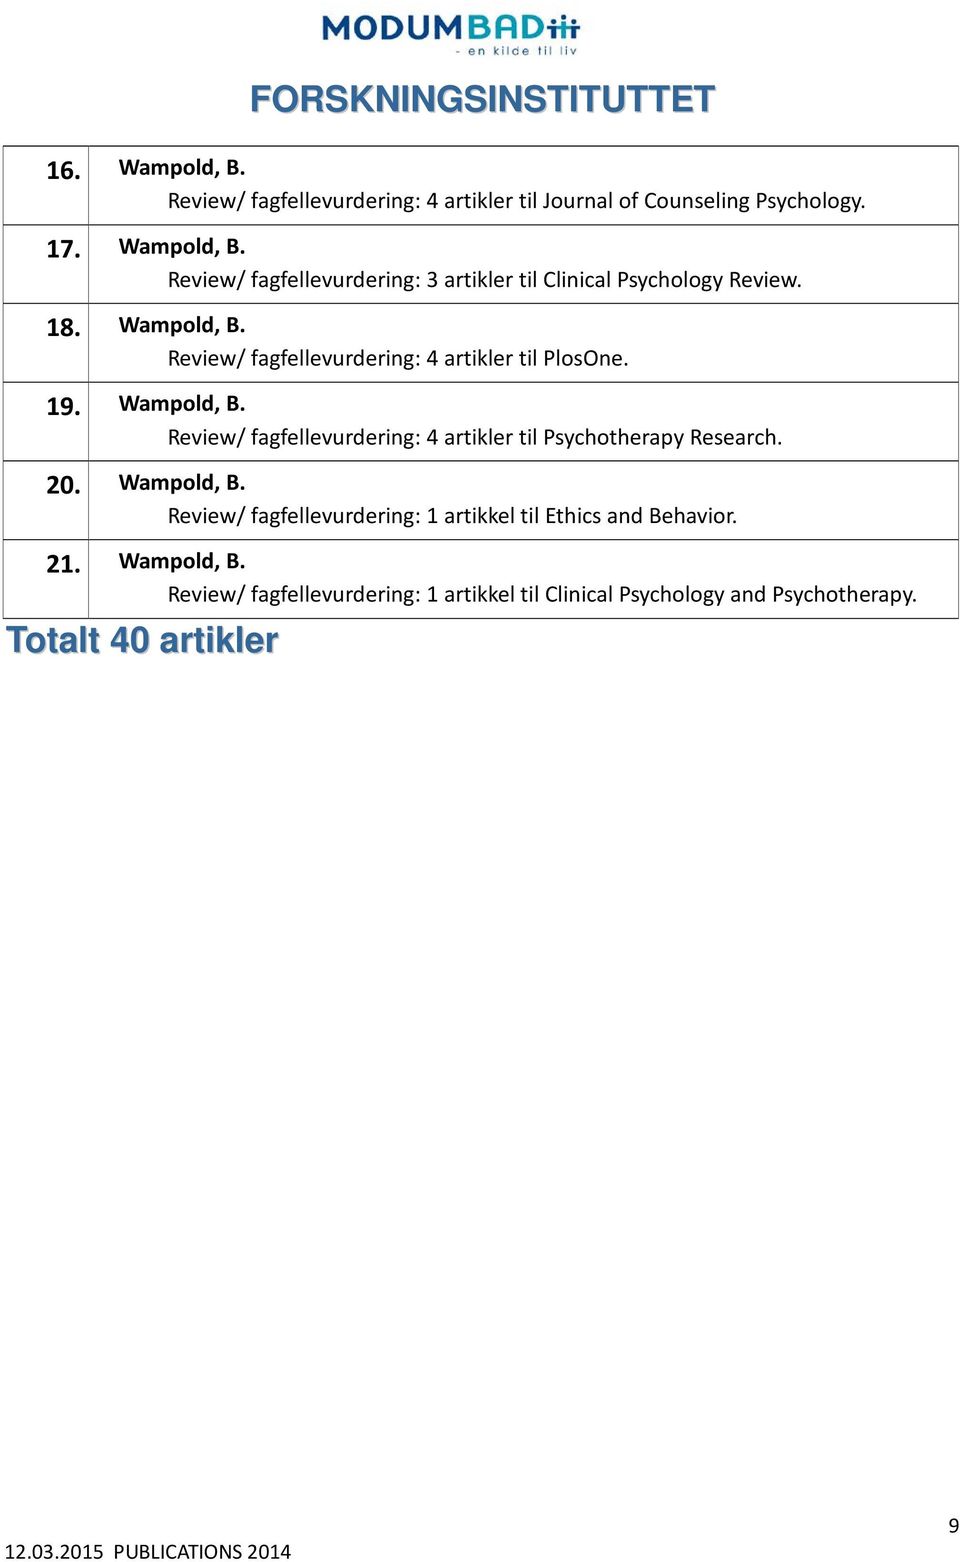 20. Wampold, B. Review/ fagfellevurdering: 1 artikkel til Ethics and Behavior. 21. Wampold, B. Review/ fagfellevurdering: 1 artikkel til Clinical Psychology and Psychotherapy.